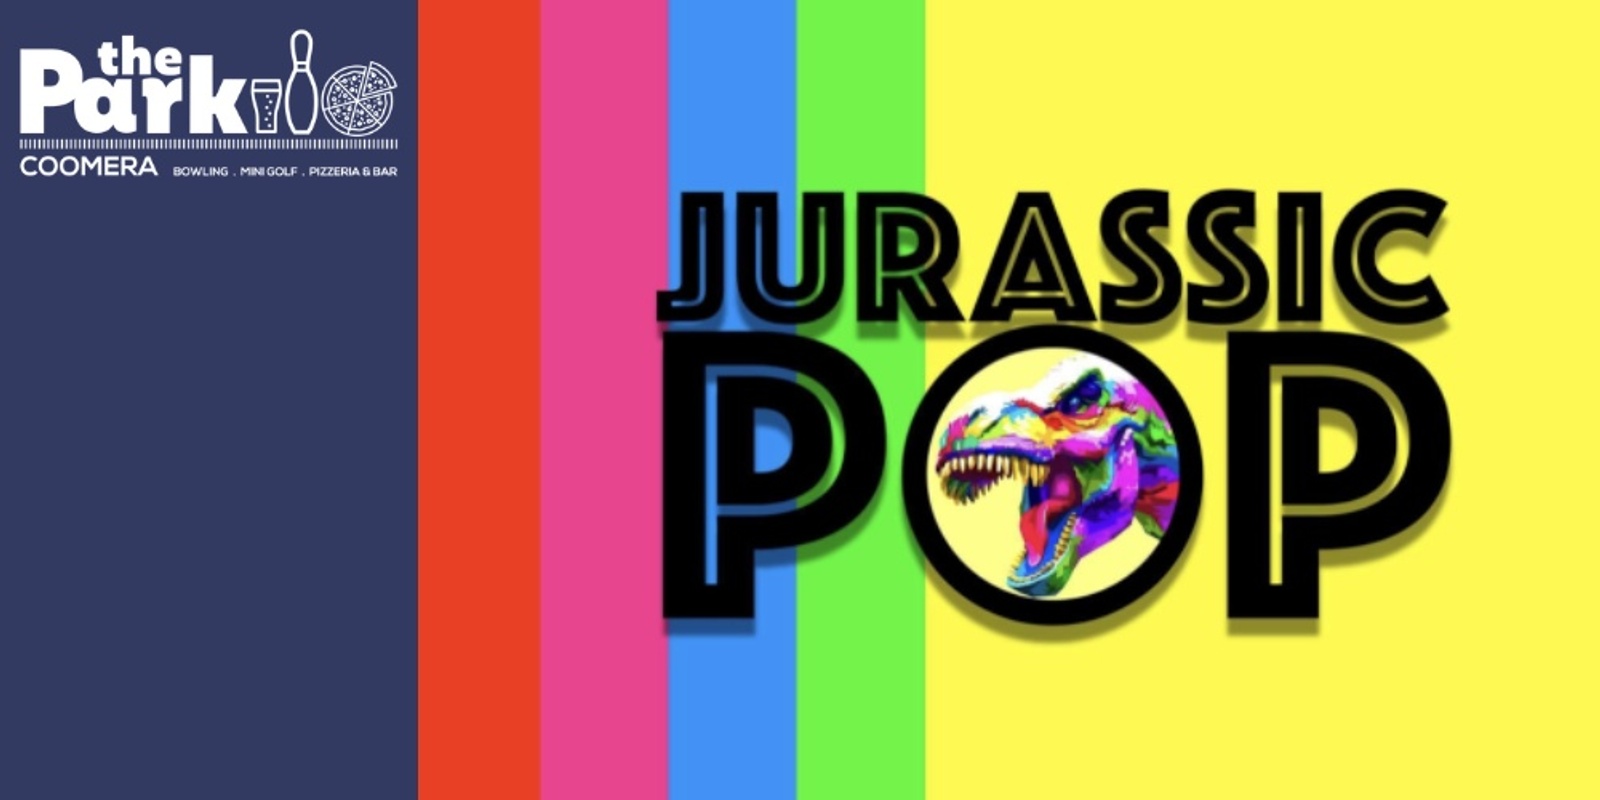 Banner image for Jurassic Pop - 90's Bangers